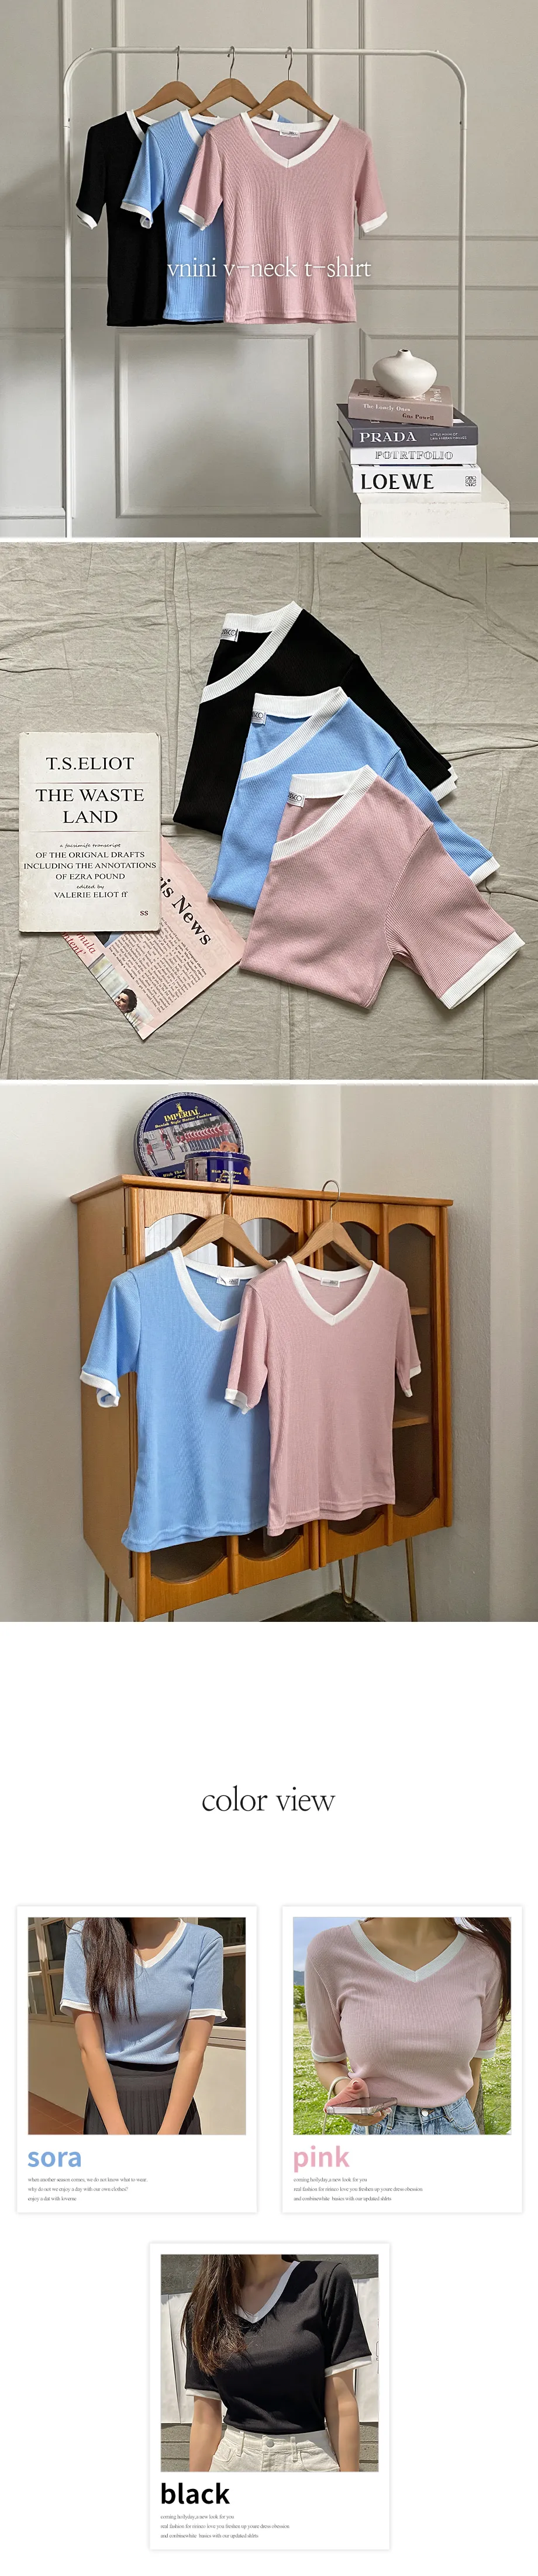 리리앤코 브니니 스판 배색 골지 브이넥 티셔츠